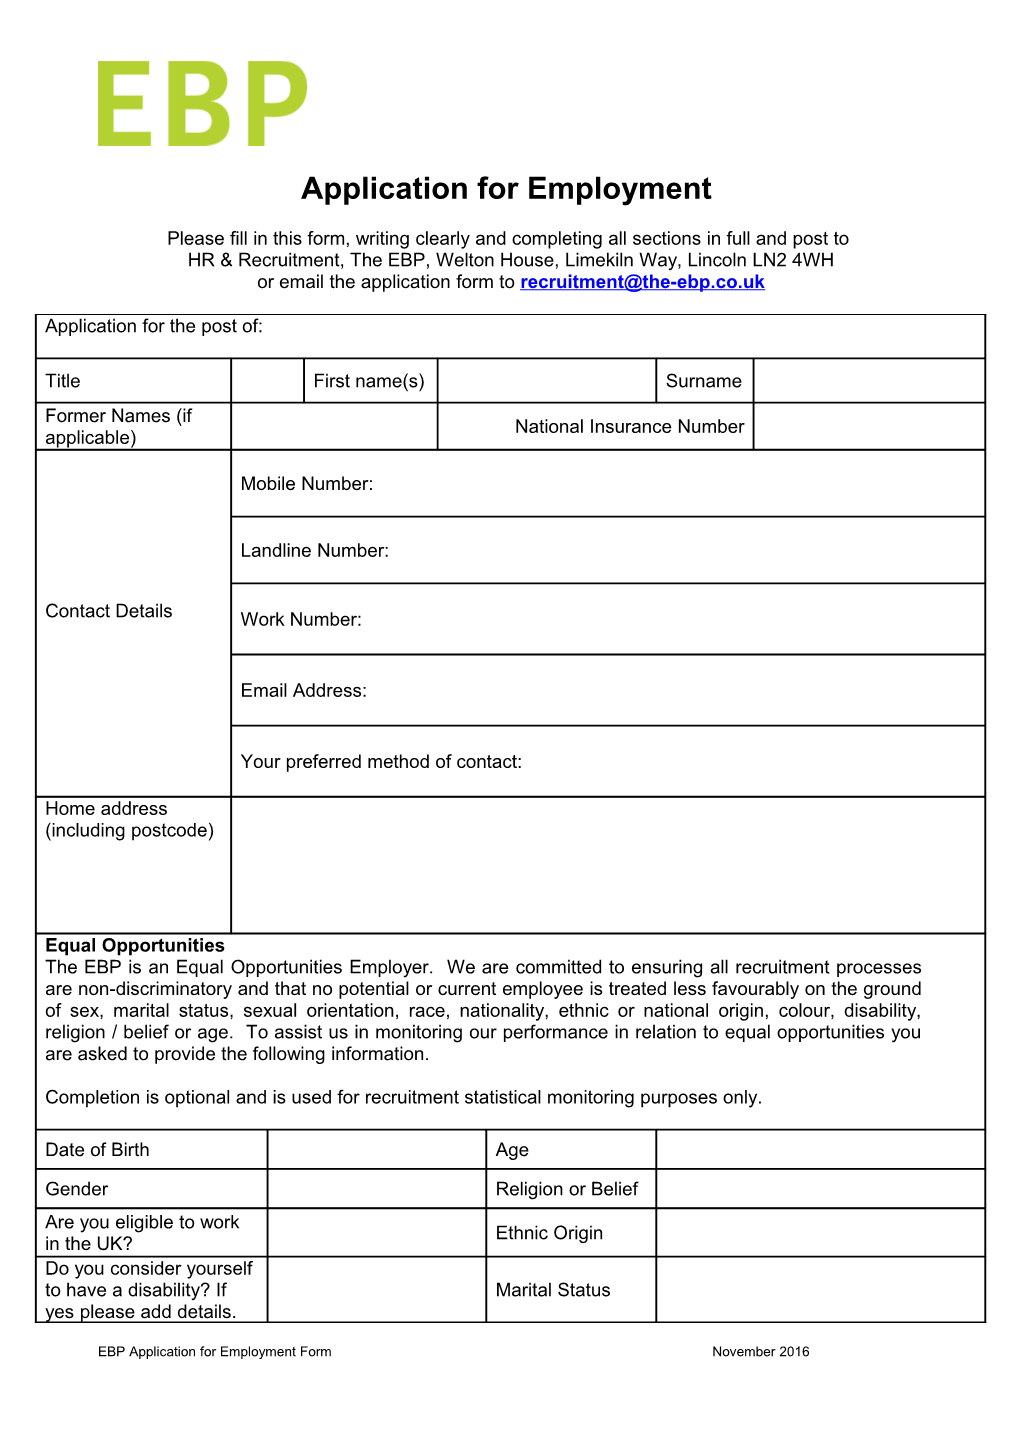 Registration of Interest Form